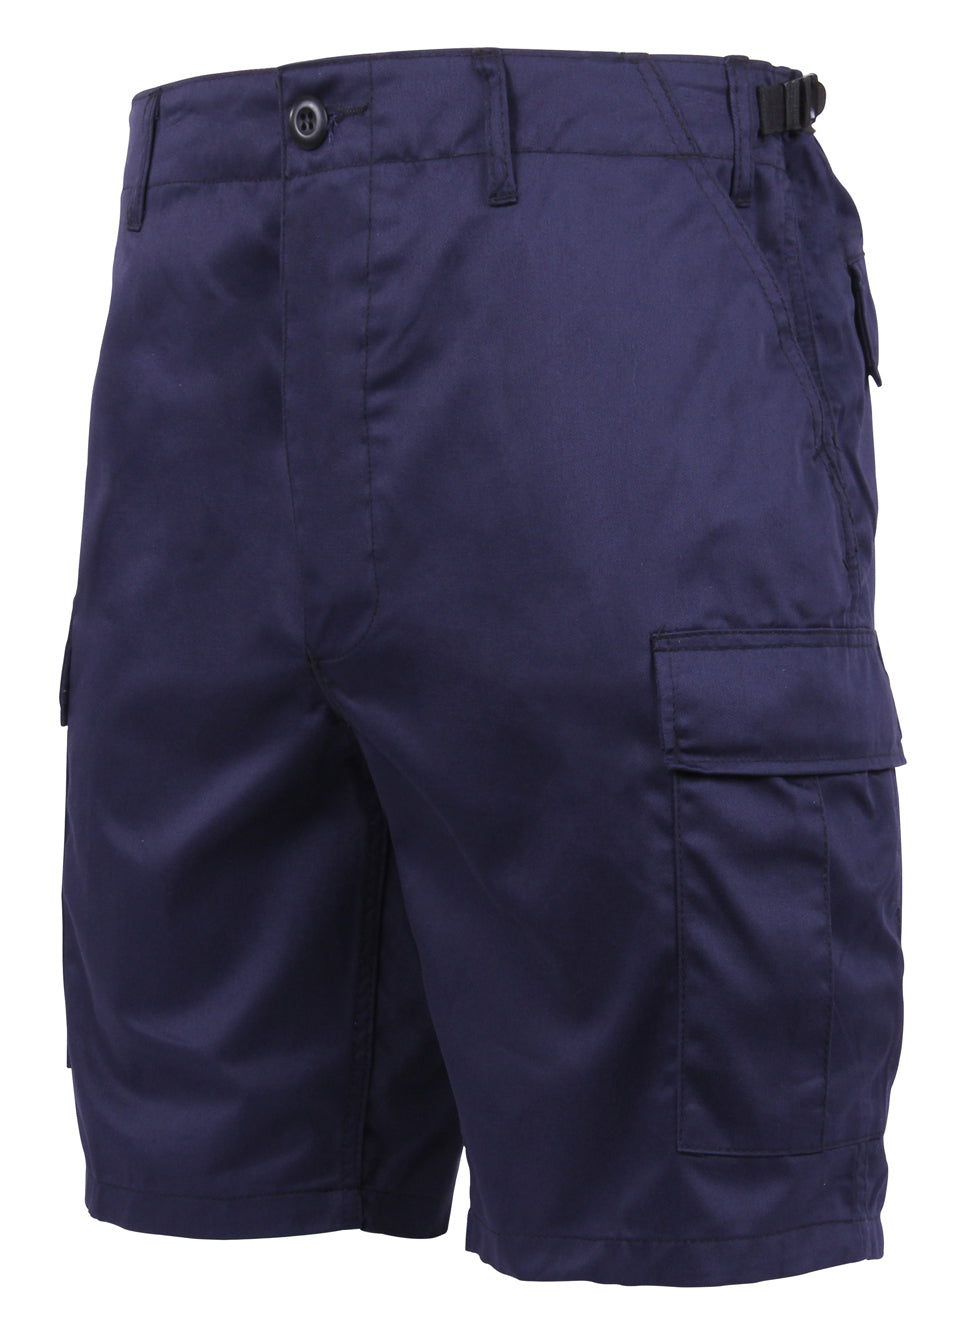 Rothco BDU Shorts, Tactical Cargo Shorts